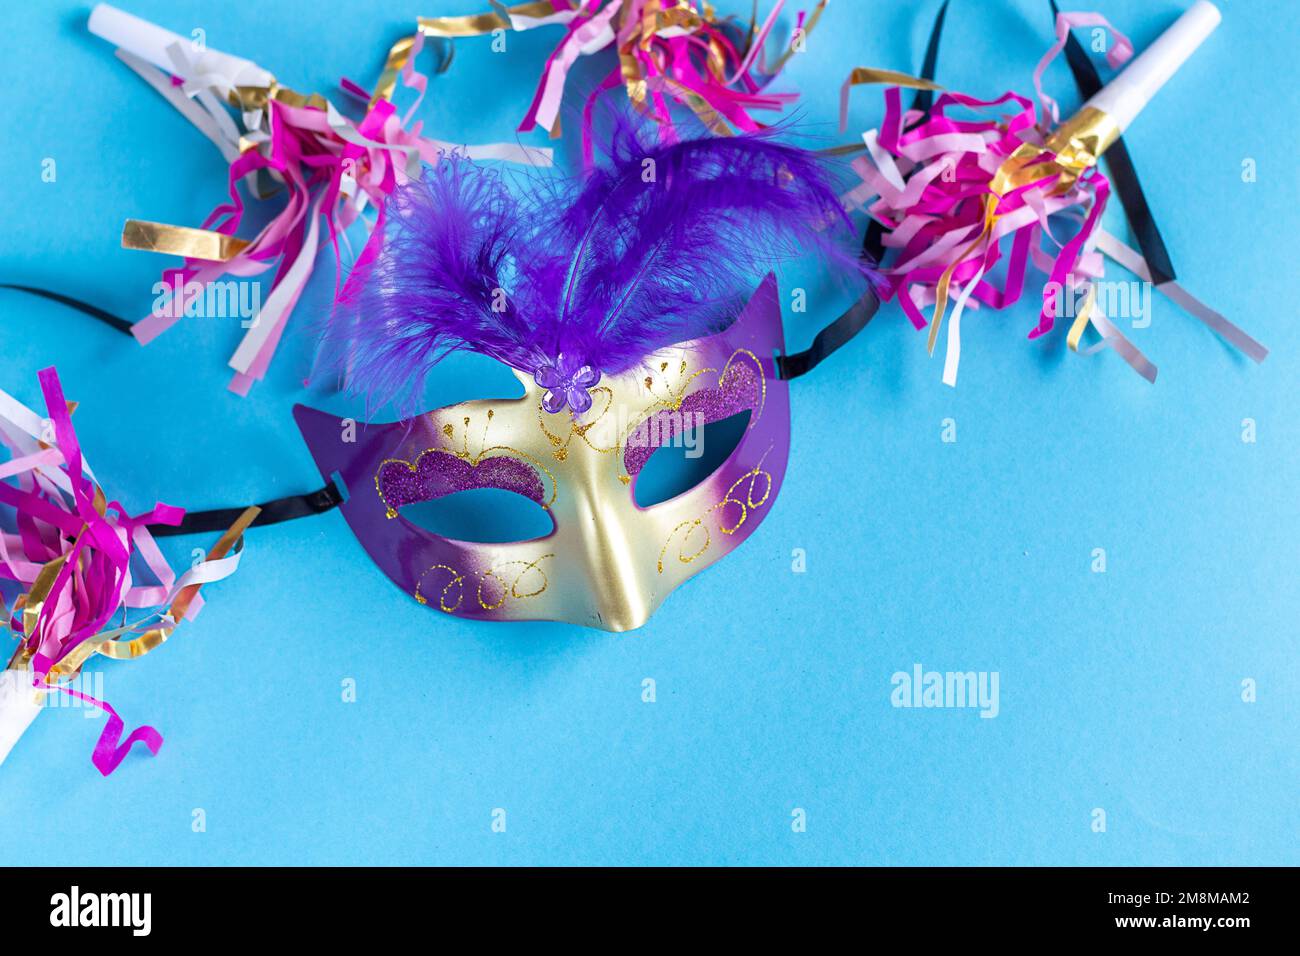 Festliche Gesichtsmaske für Karnevalsfeiern auf blauem Hintergrund. Karnevalshintergrund mit Karnevalsmasken. Flaches Karnevalskonzept. Stockfoto